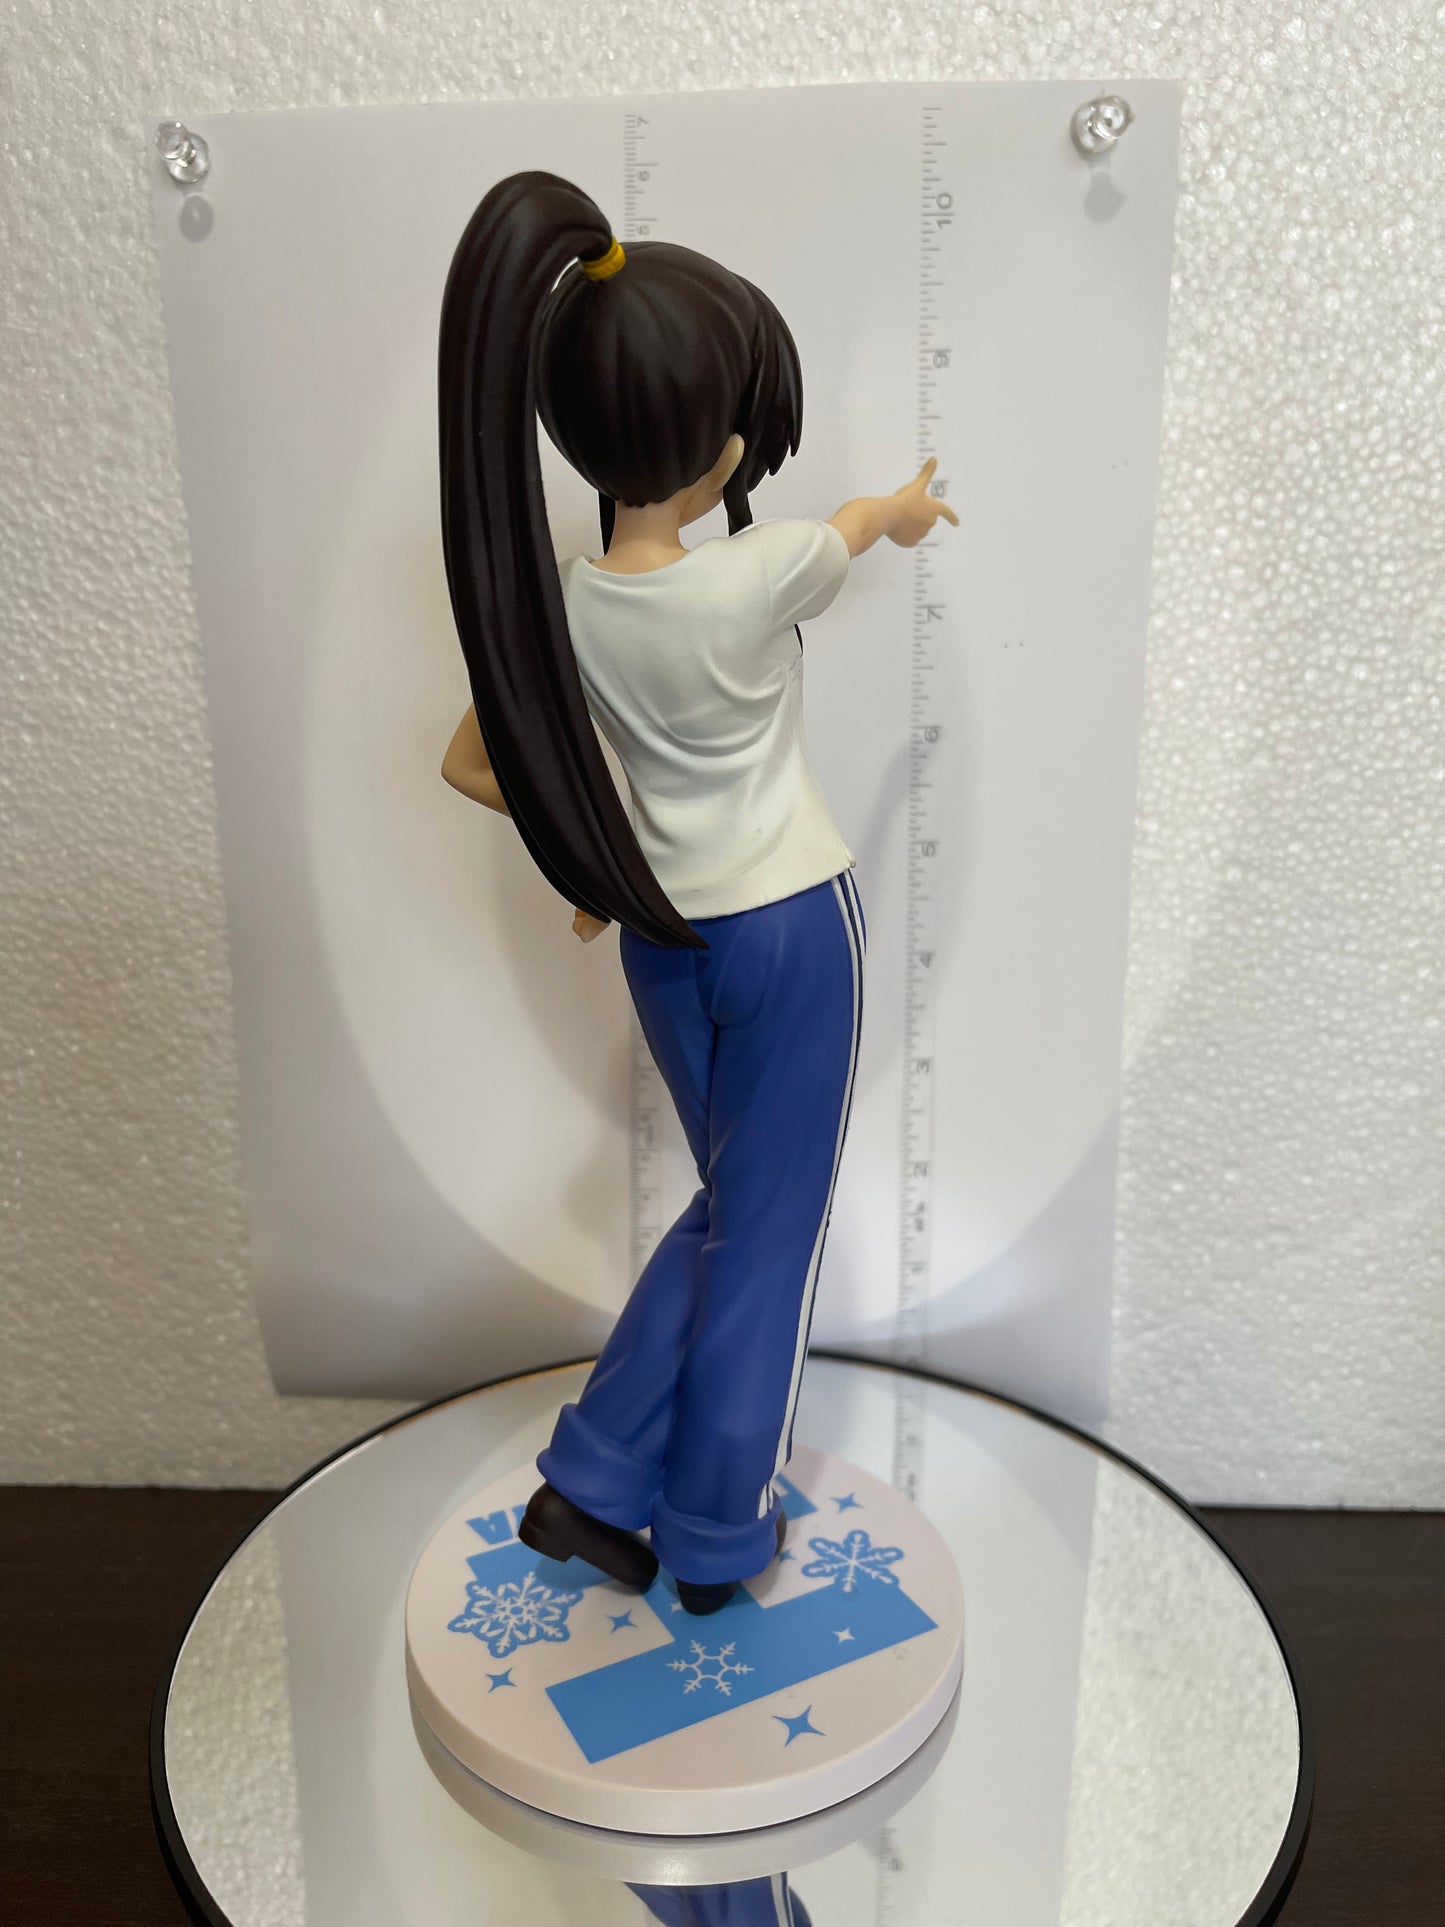 Melancholy of Suzumiya PREMIUM FIGURE Haruhi Suzumiya 23cm Sega Premium #035